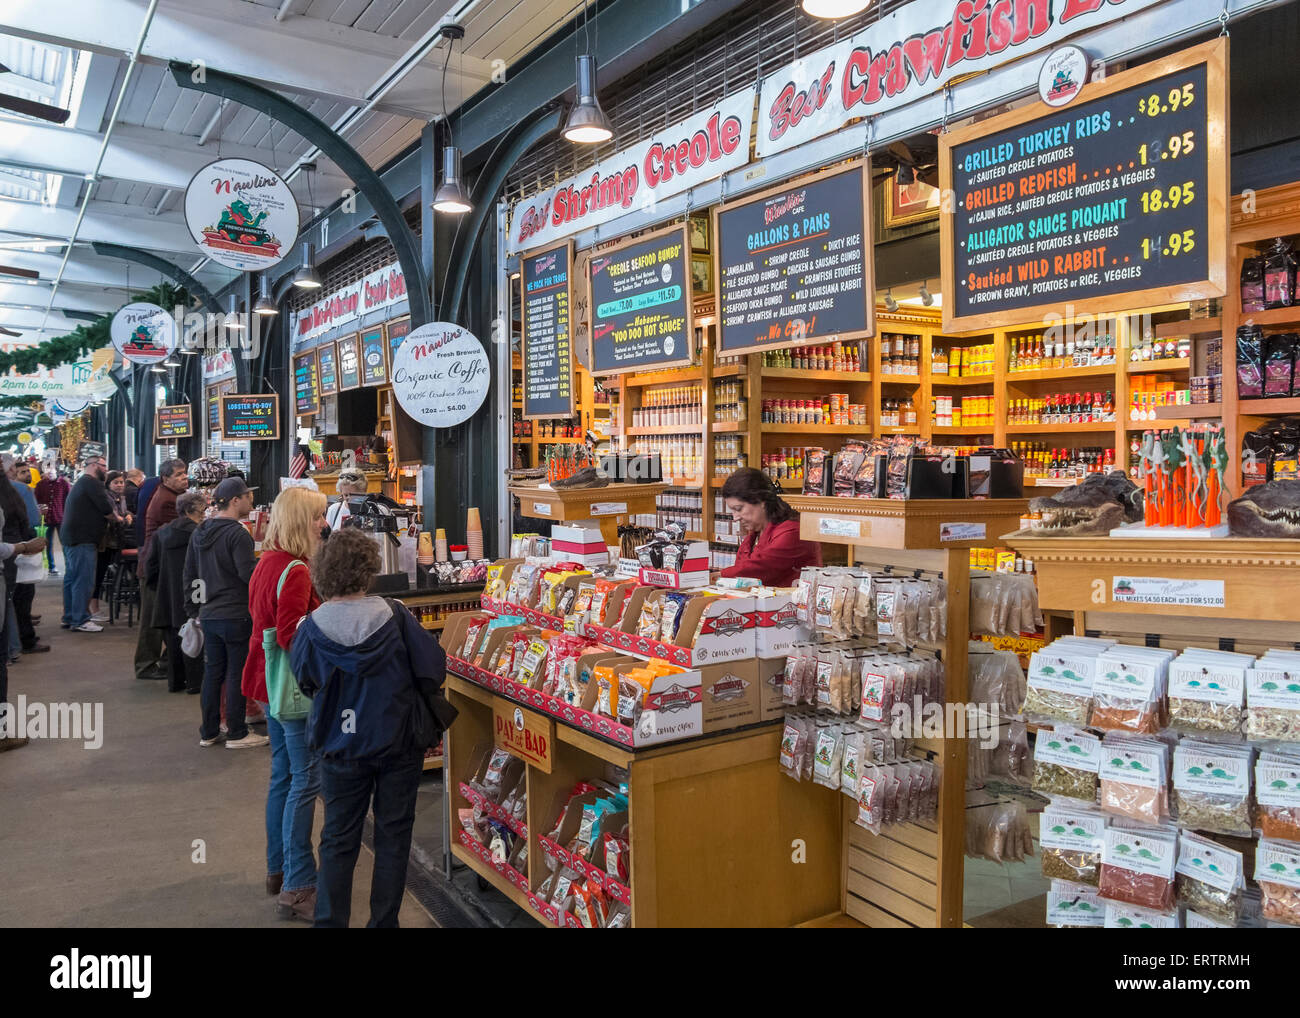 All'interno del mercato francese, New Orleans, Louisiana, Stati Uniti d'America Foto Stock